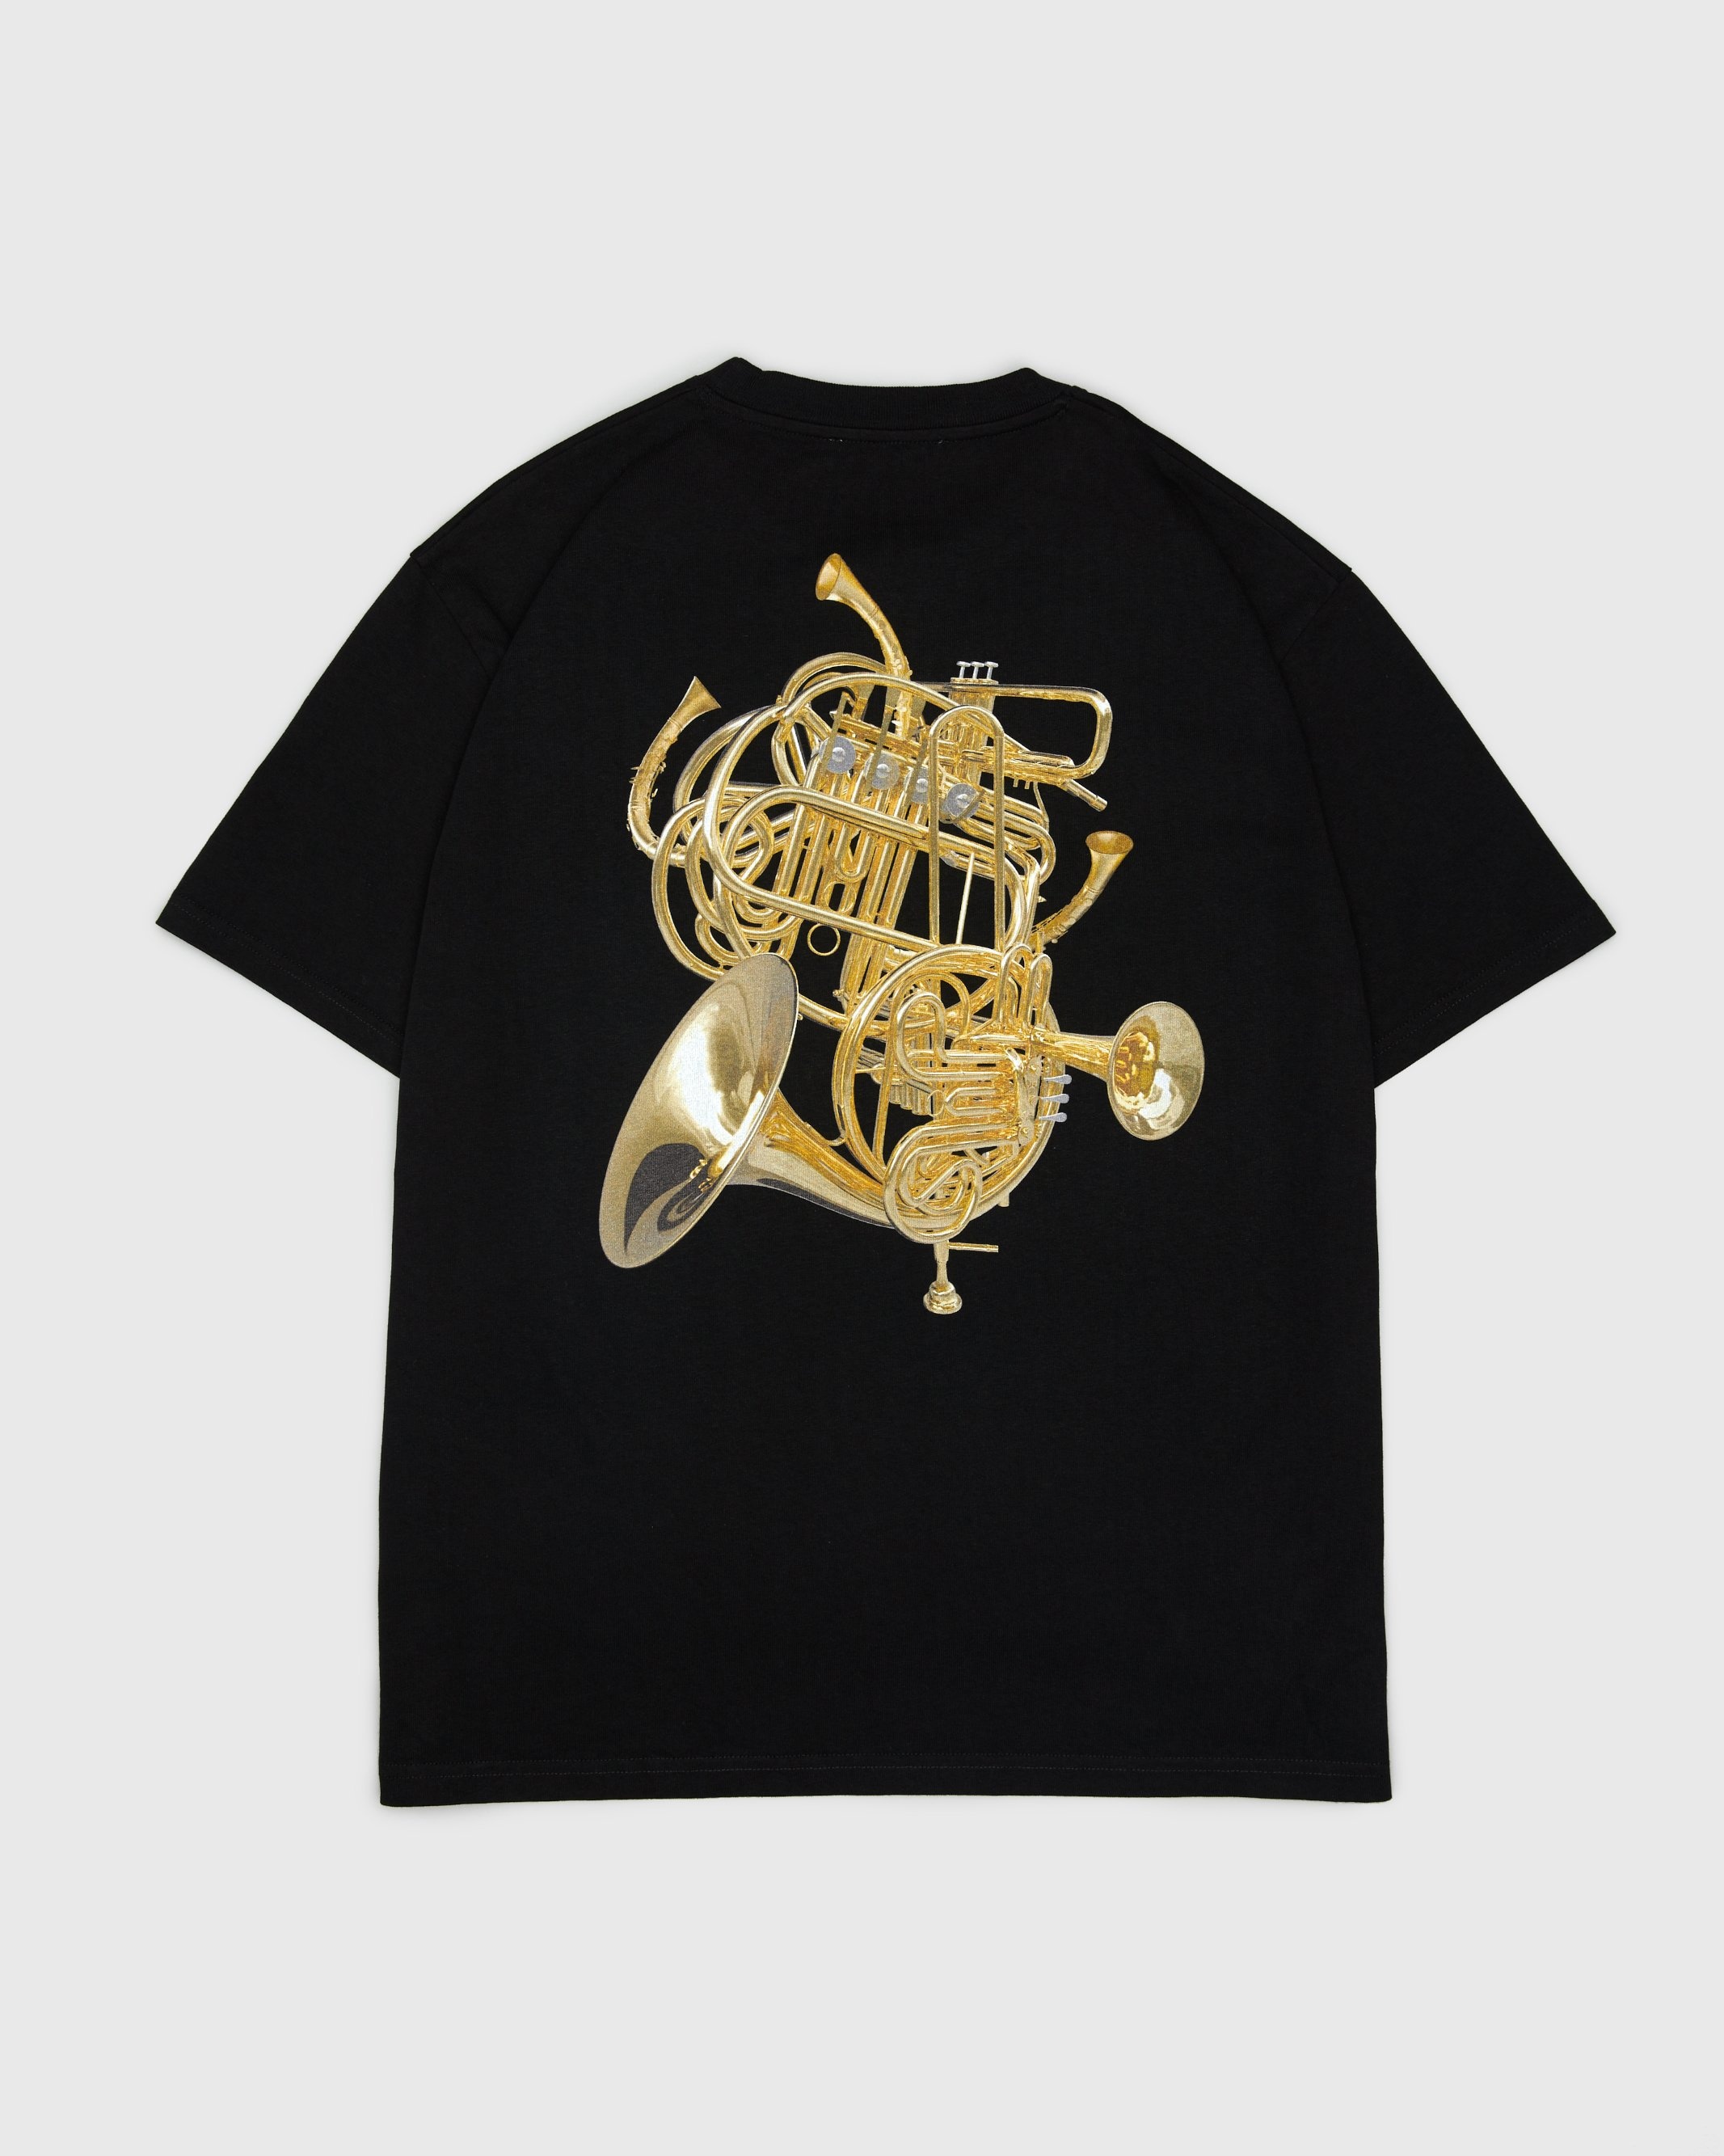 Highsnobiety – Jazz TV Horn Monster T-Shirt Black